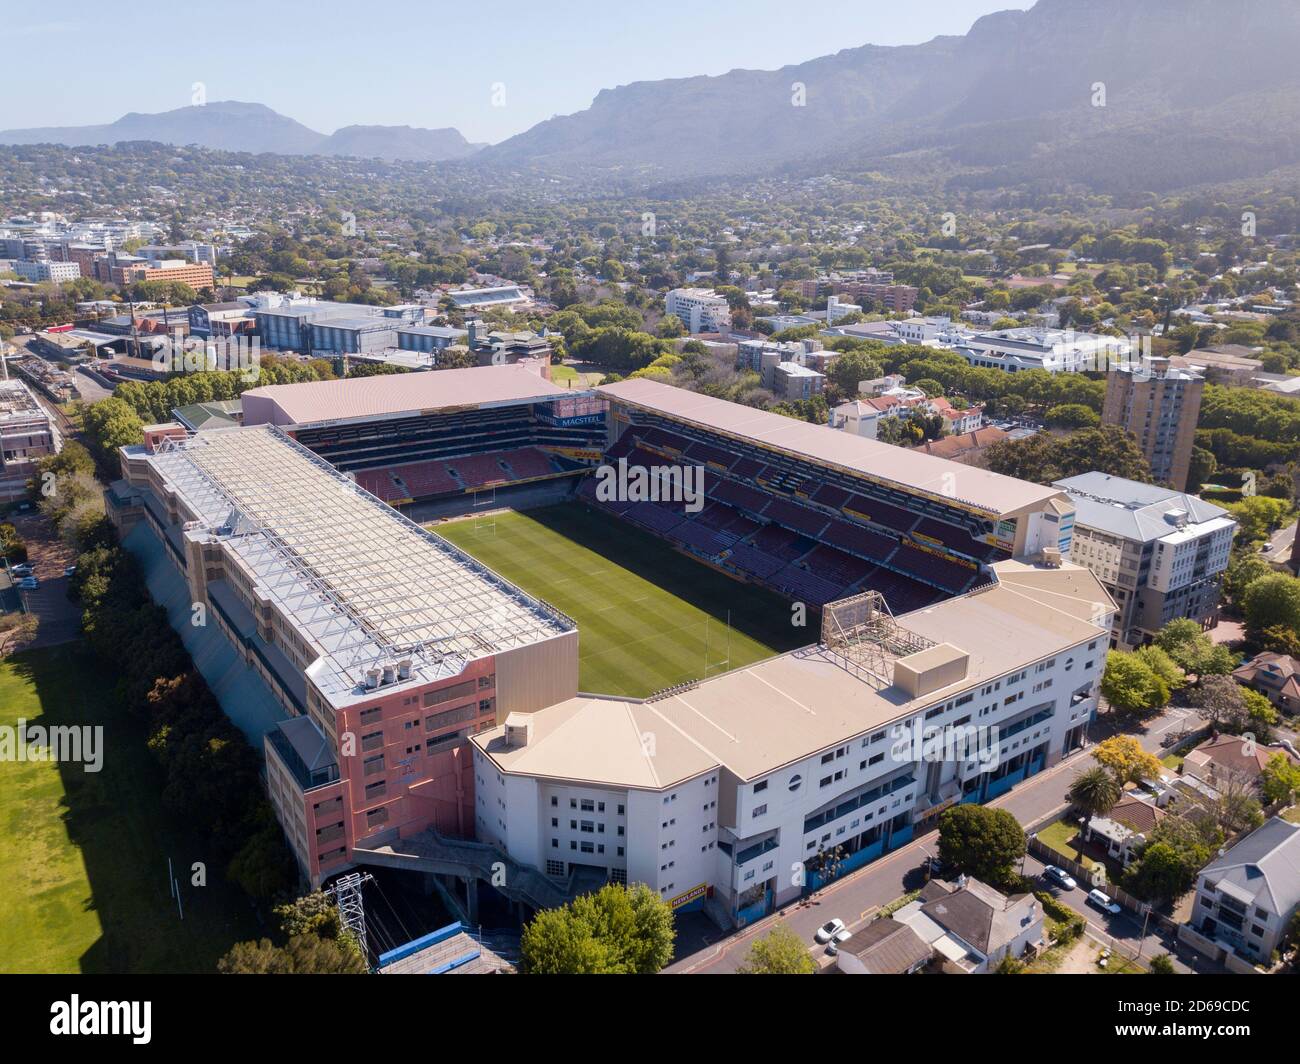 15 octobre 2020 - Cape Town, Afrique du Sud : stade de rugby de Newlands à Cape Town, Afrique du Sud Banque D'Images